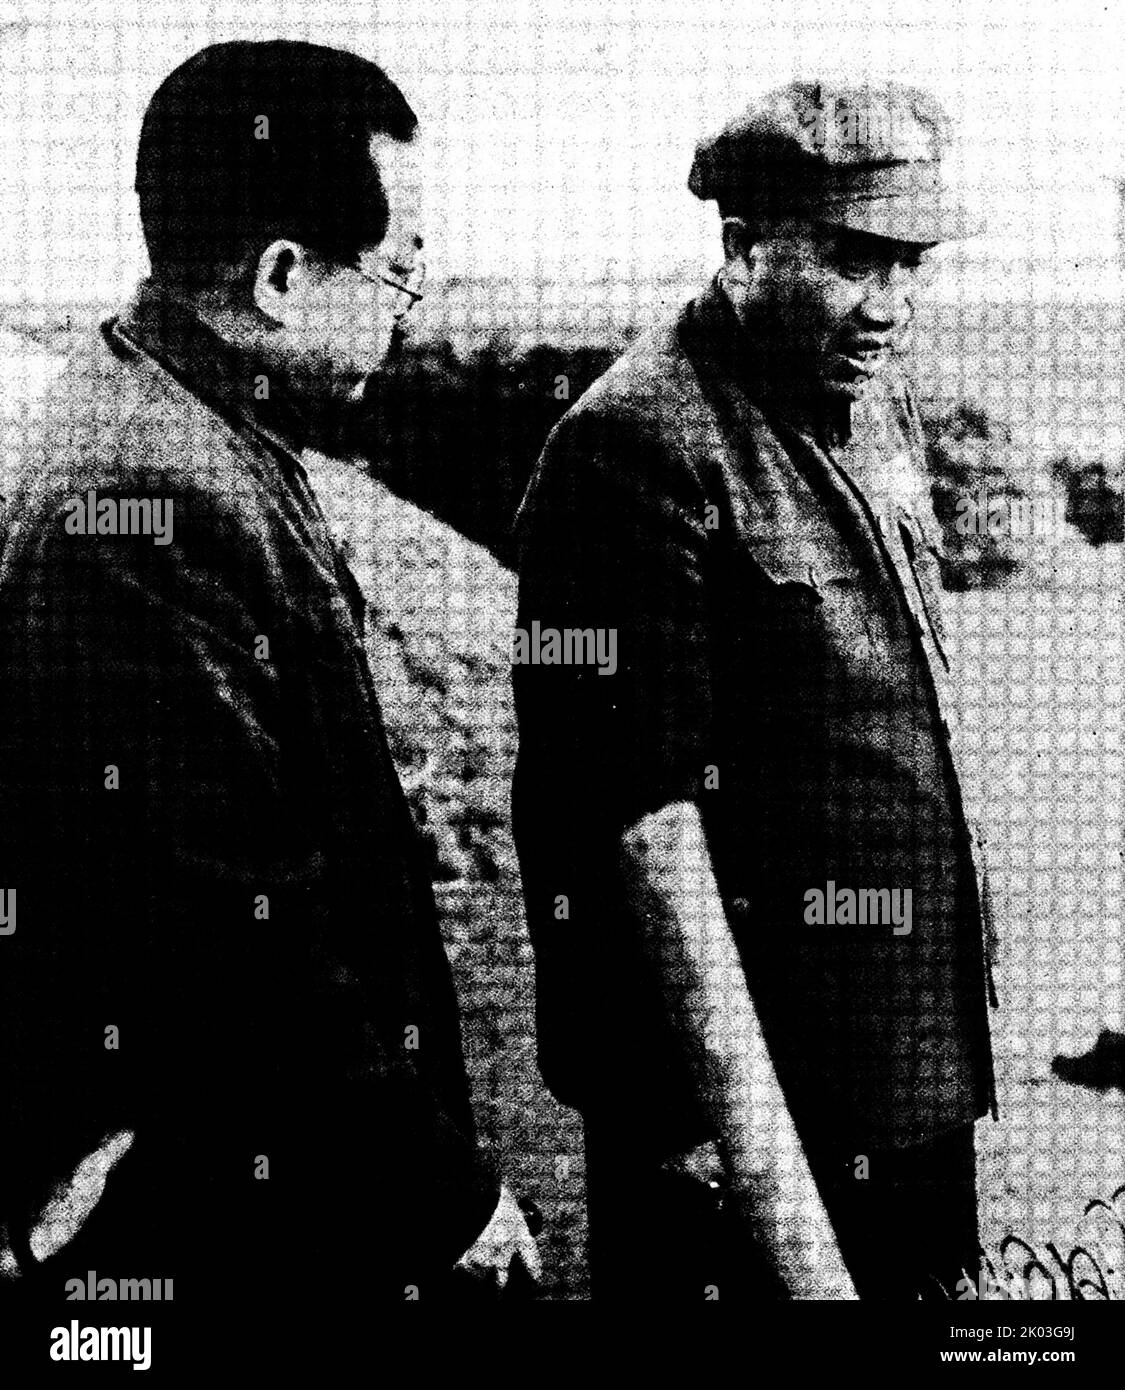 Ren Bishi und Zhu De, die zu ihm kamen, besuchten ihn auf dem Land in der Nähe des Yuquan Berges. Zhu De war 18 Jahre älter als Ren Bishi. Die gemeinsame revolutionäre Sache und das gemeinsame Ziel machten sie als Brüder nahe. Sie jagten oft, gingen und spielten in ihren Pausen zusammen Schach. Ren Bishi war Anfang 1930 militärischer und politischer Führer in der frühen Kommunistischen Partei Chinas. Stockfoto